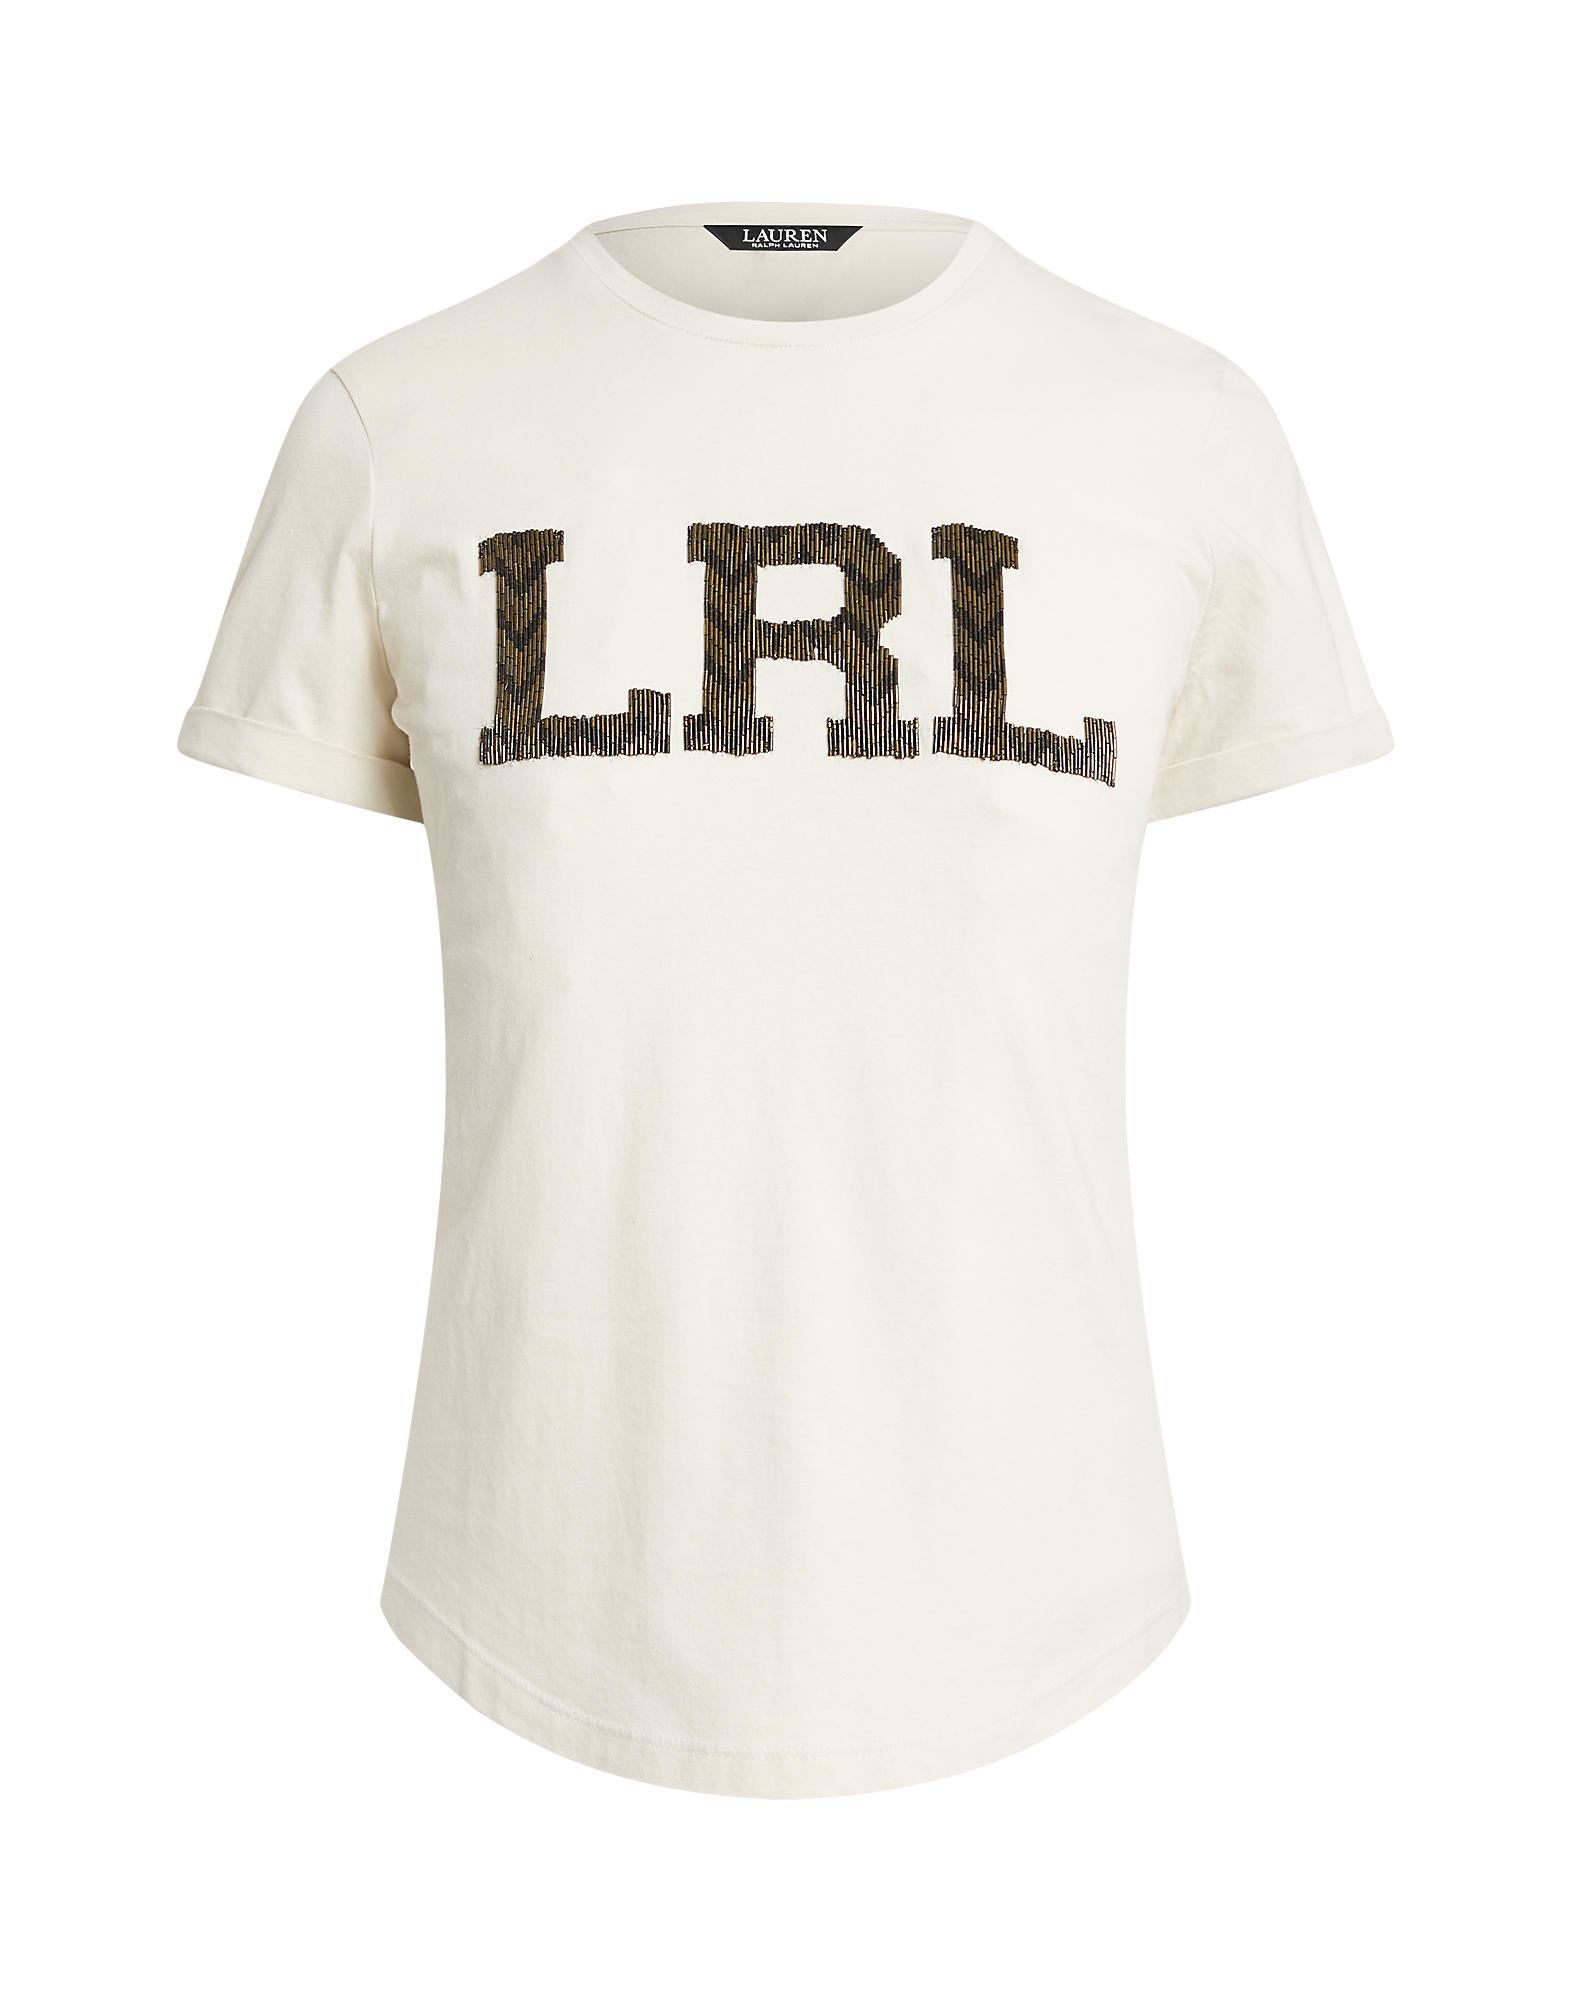 Lauren Ralph Lauren T-shirts In White